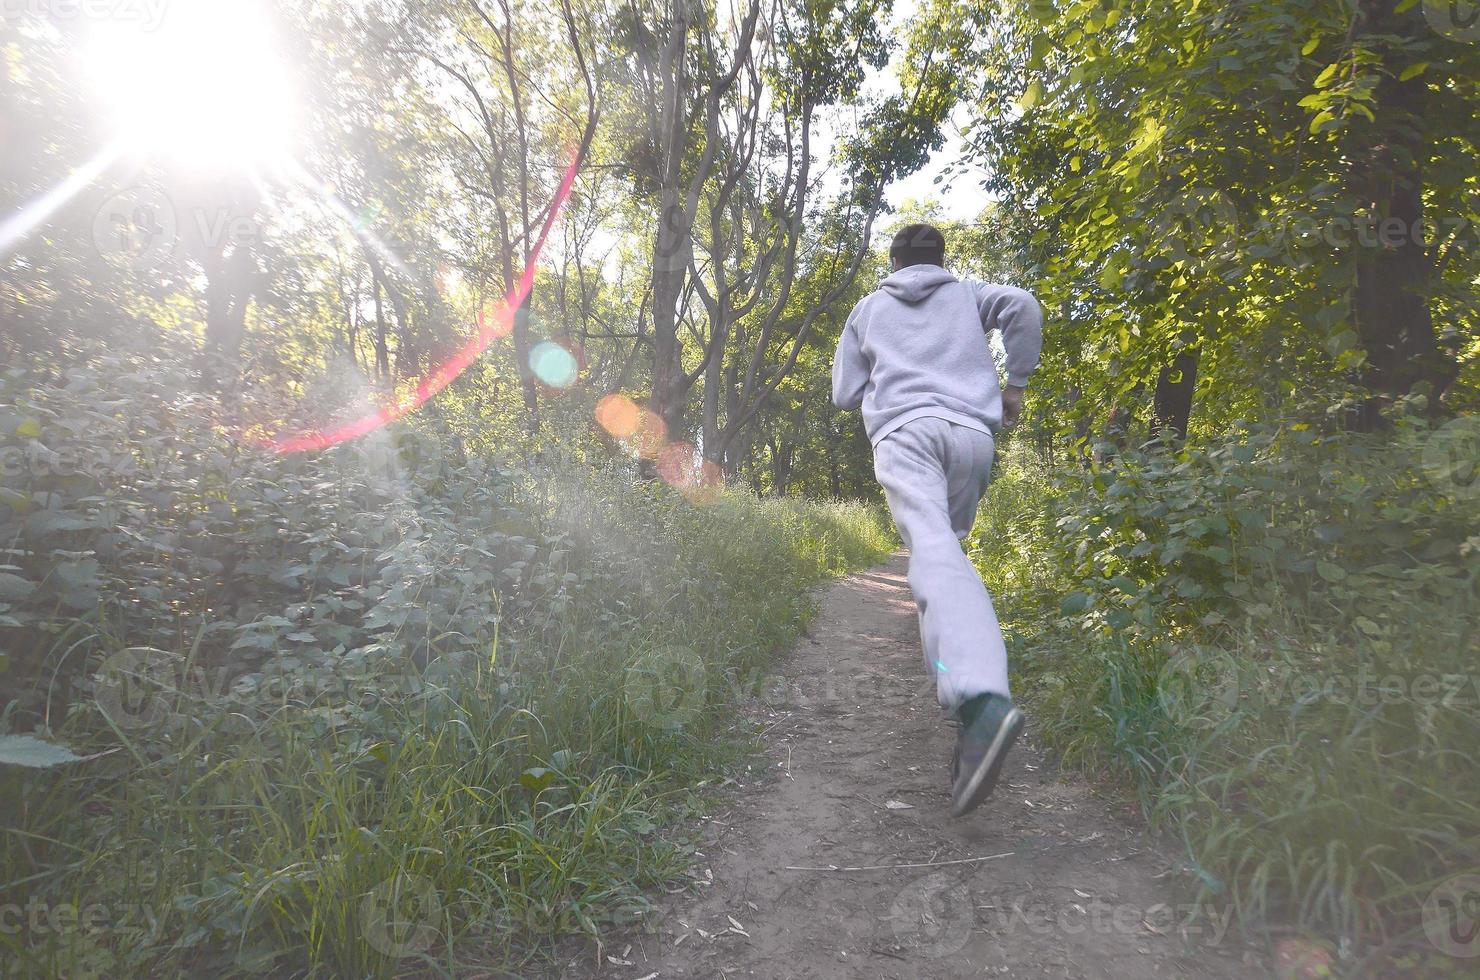 un joven con un traje deportivo gris corre por el camino entre los foto